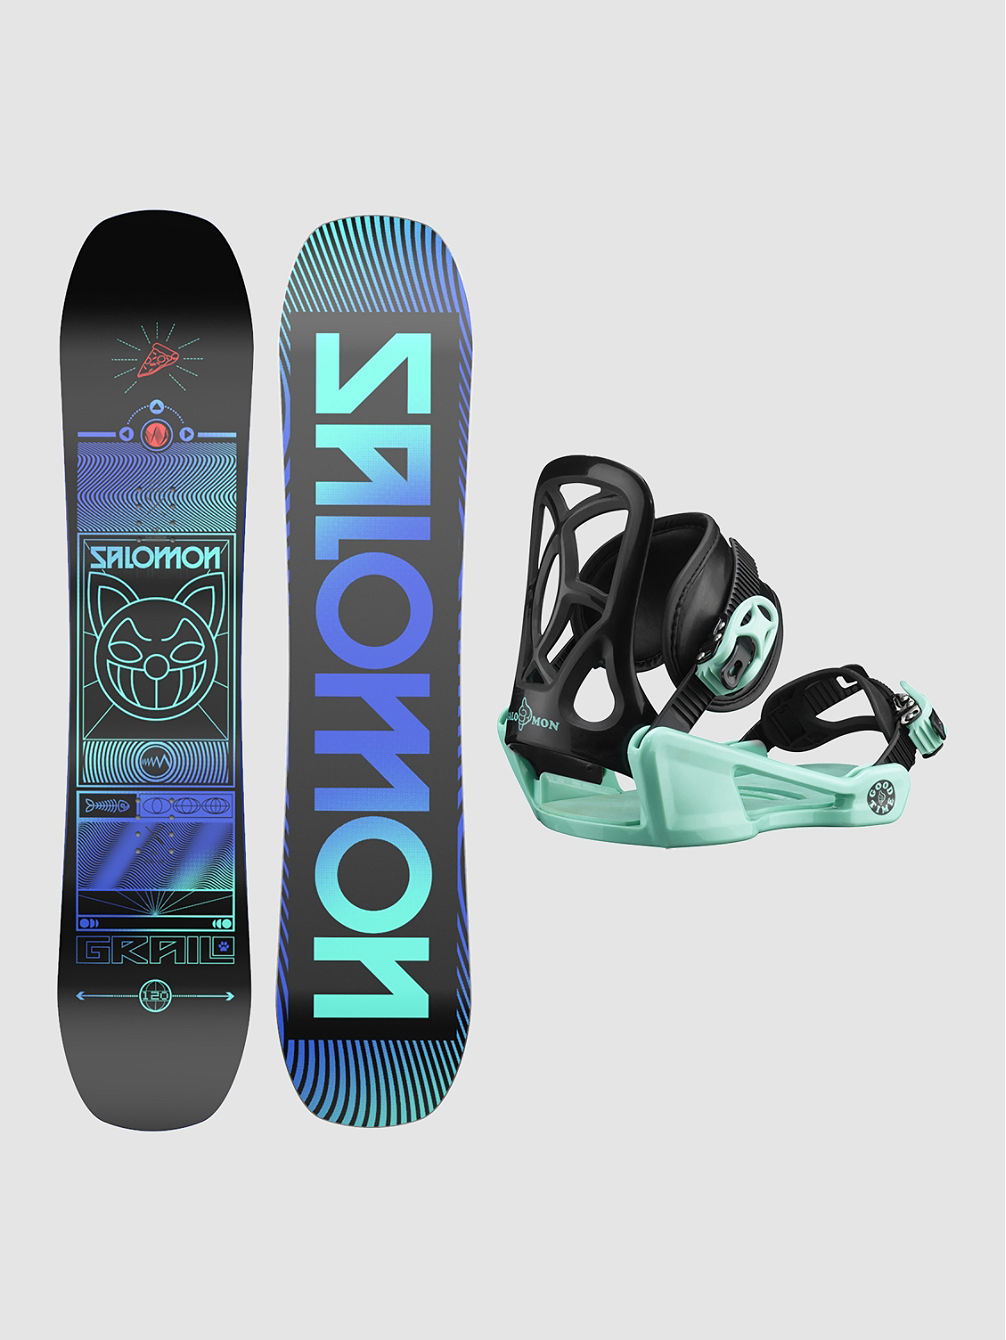 Grail 110 + Goodtime XS 2023 Snowboardpaket